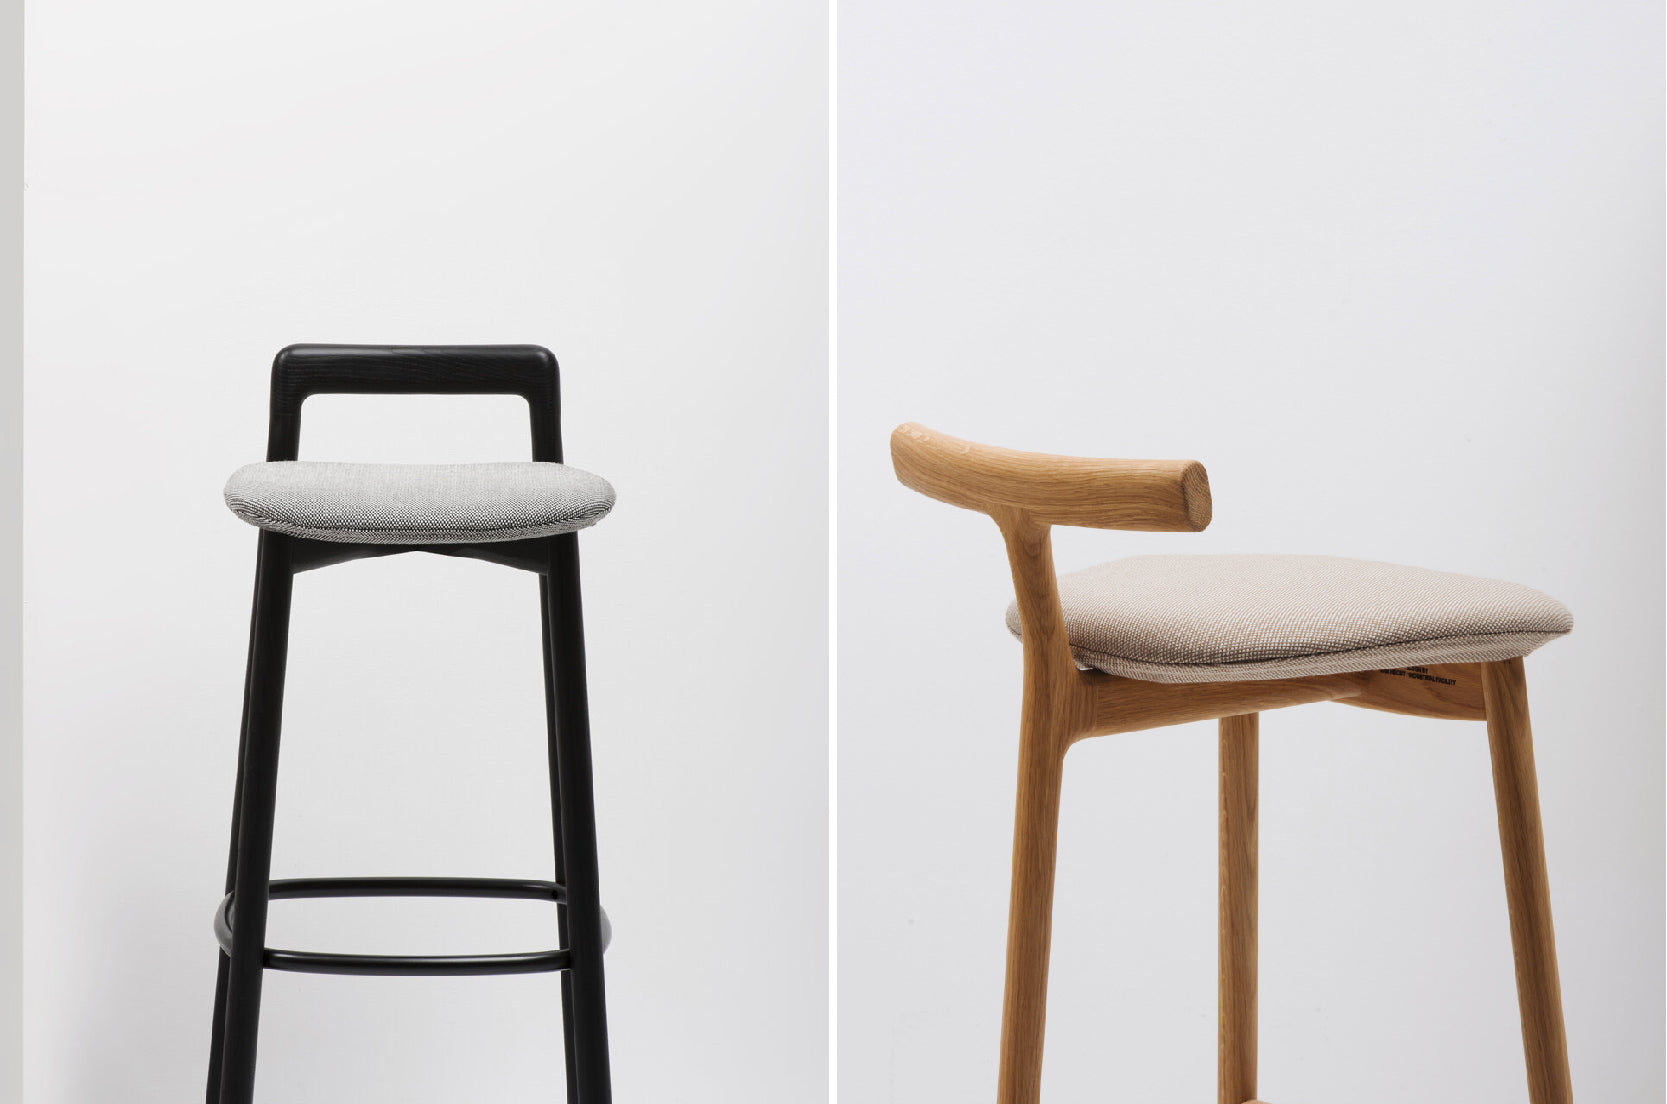 高腳椅吧台椅推薦: Mattiazzi Branca / Radice 系列均可選搭「可拆式座墊」